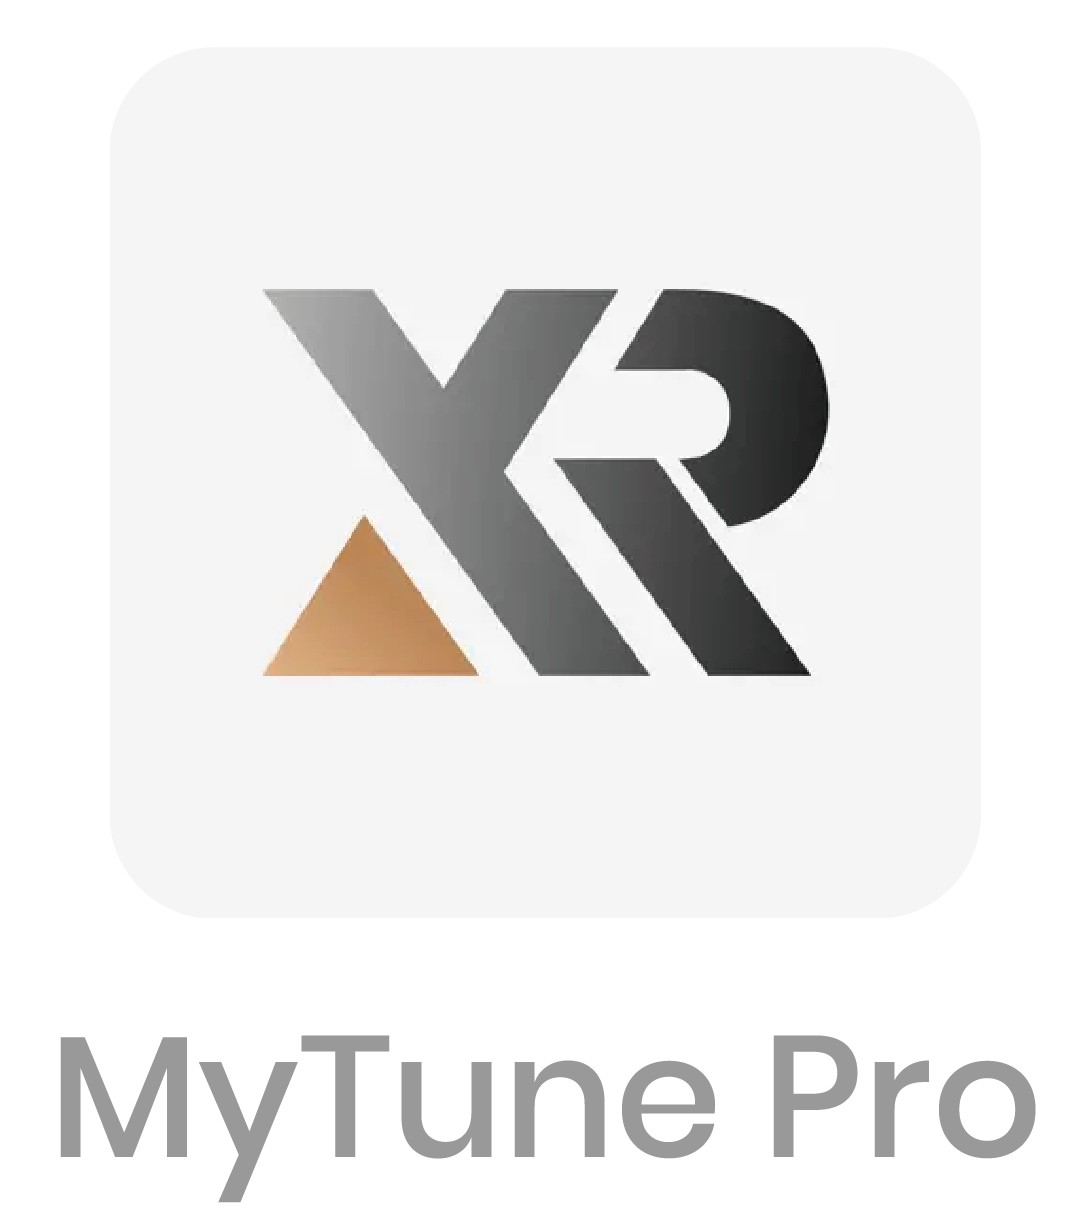 MyTune Pro